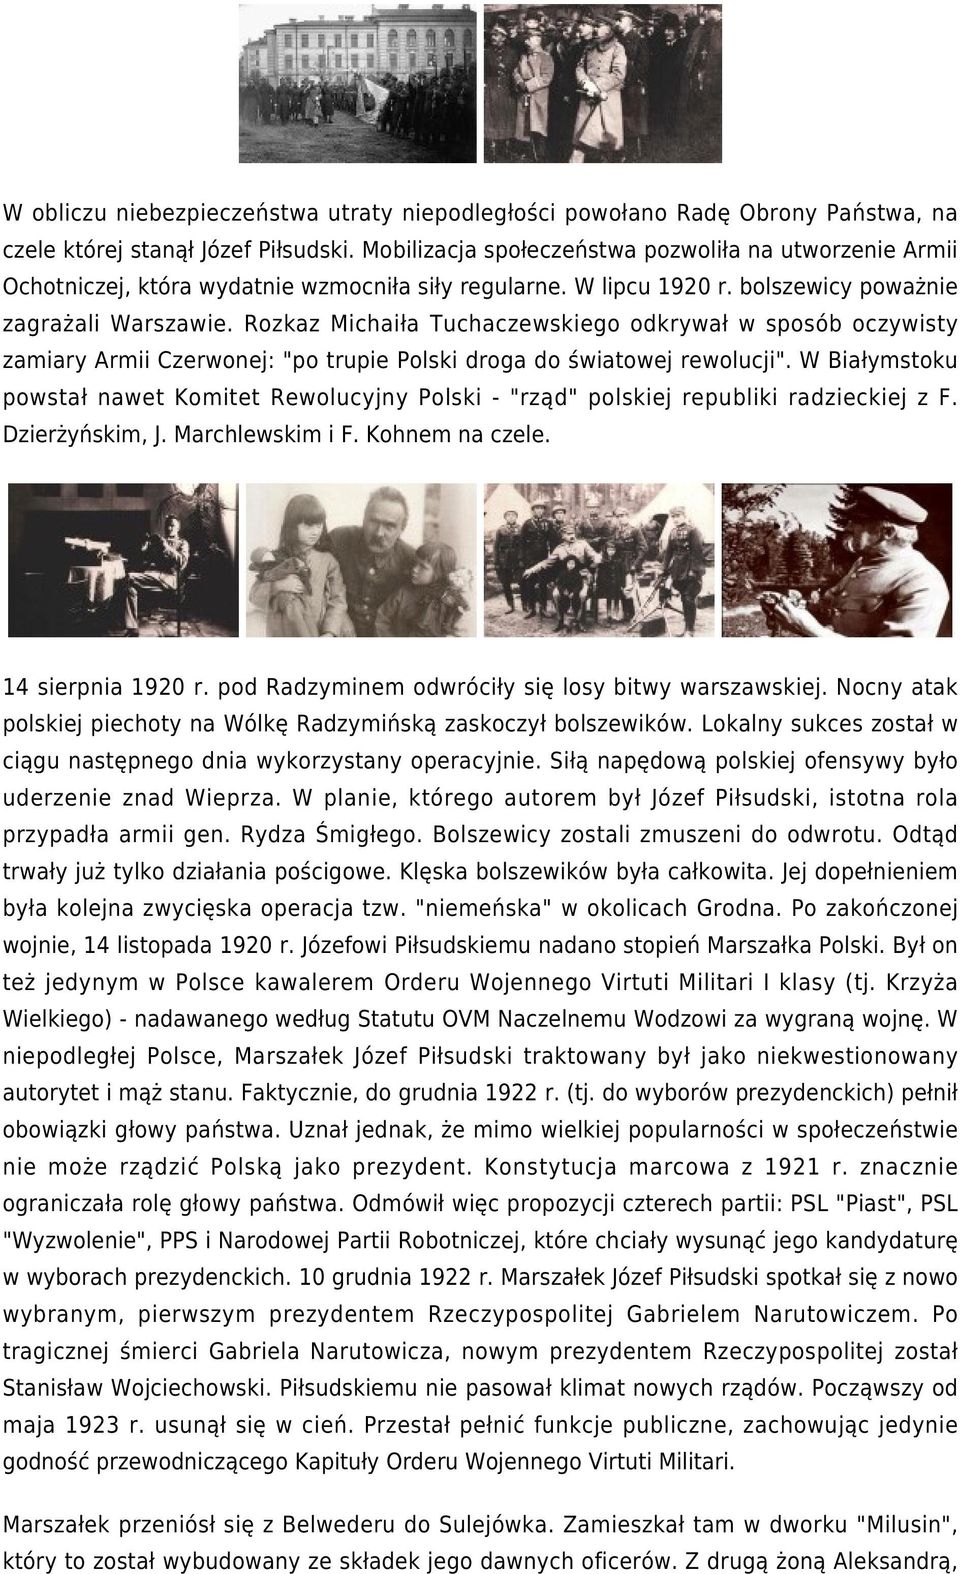 Rozkaz Michaiła Tuchaczewskiego odkrywał w sposób oczywisty zamiary Armii Czerwonej: "po trupie Polski droga do światowej rewolucji".